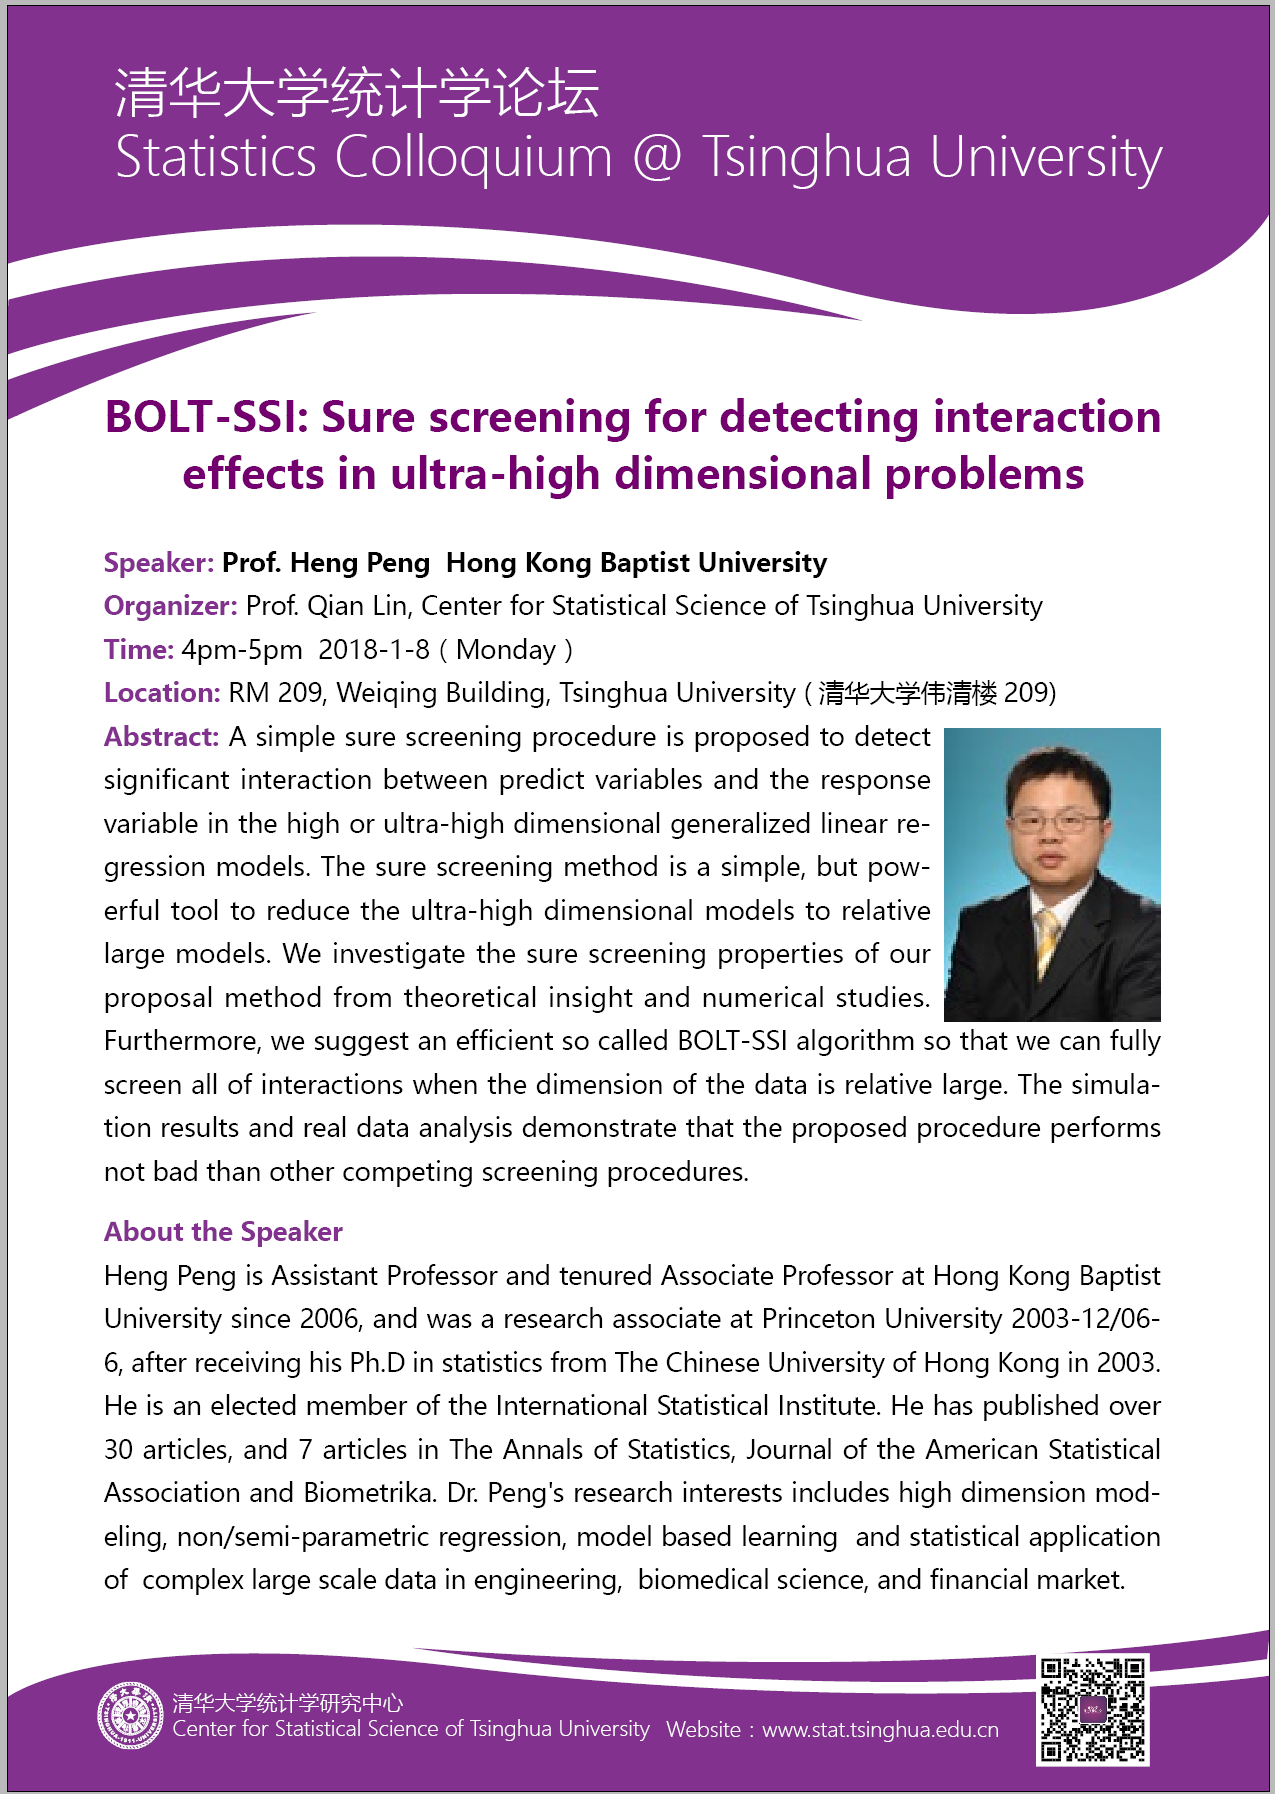 【统计学论坛】BOLT-SSI: Sure screening for detecting interaction effects in ultra-high dimensional problems